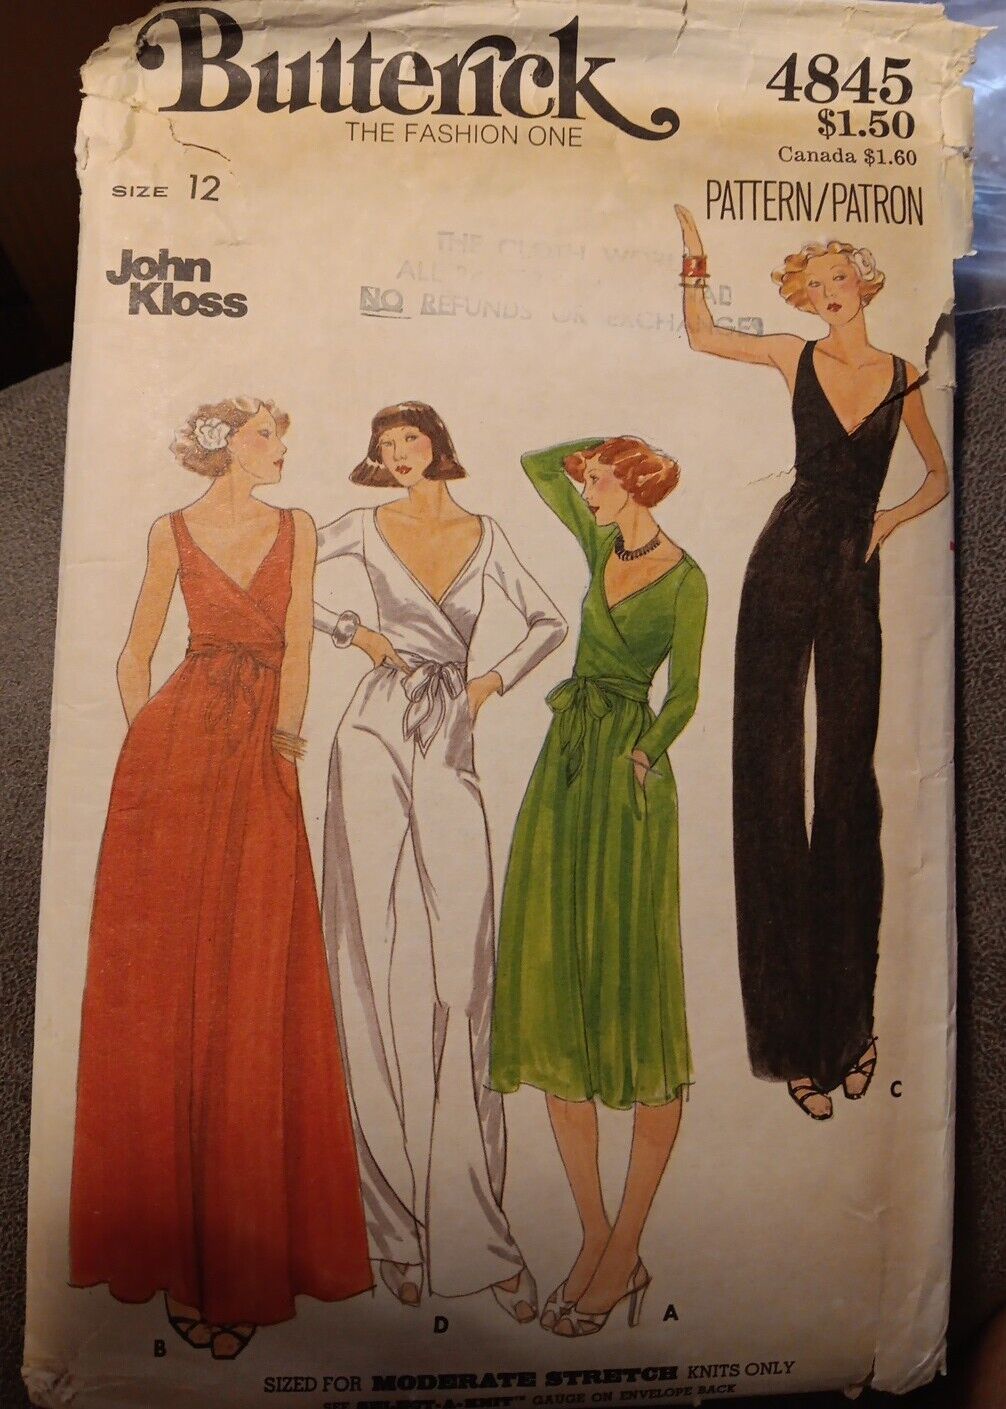 Vintage 1970s Butterick 4845 John Kloss Knit Evening Dress Size 12 Cut 